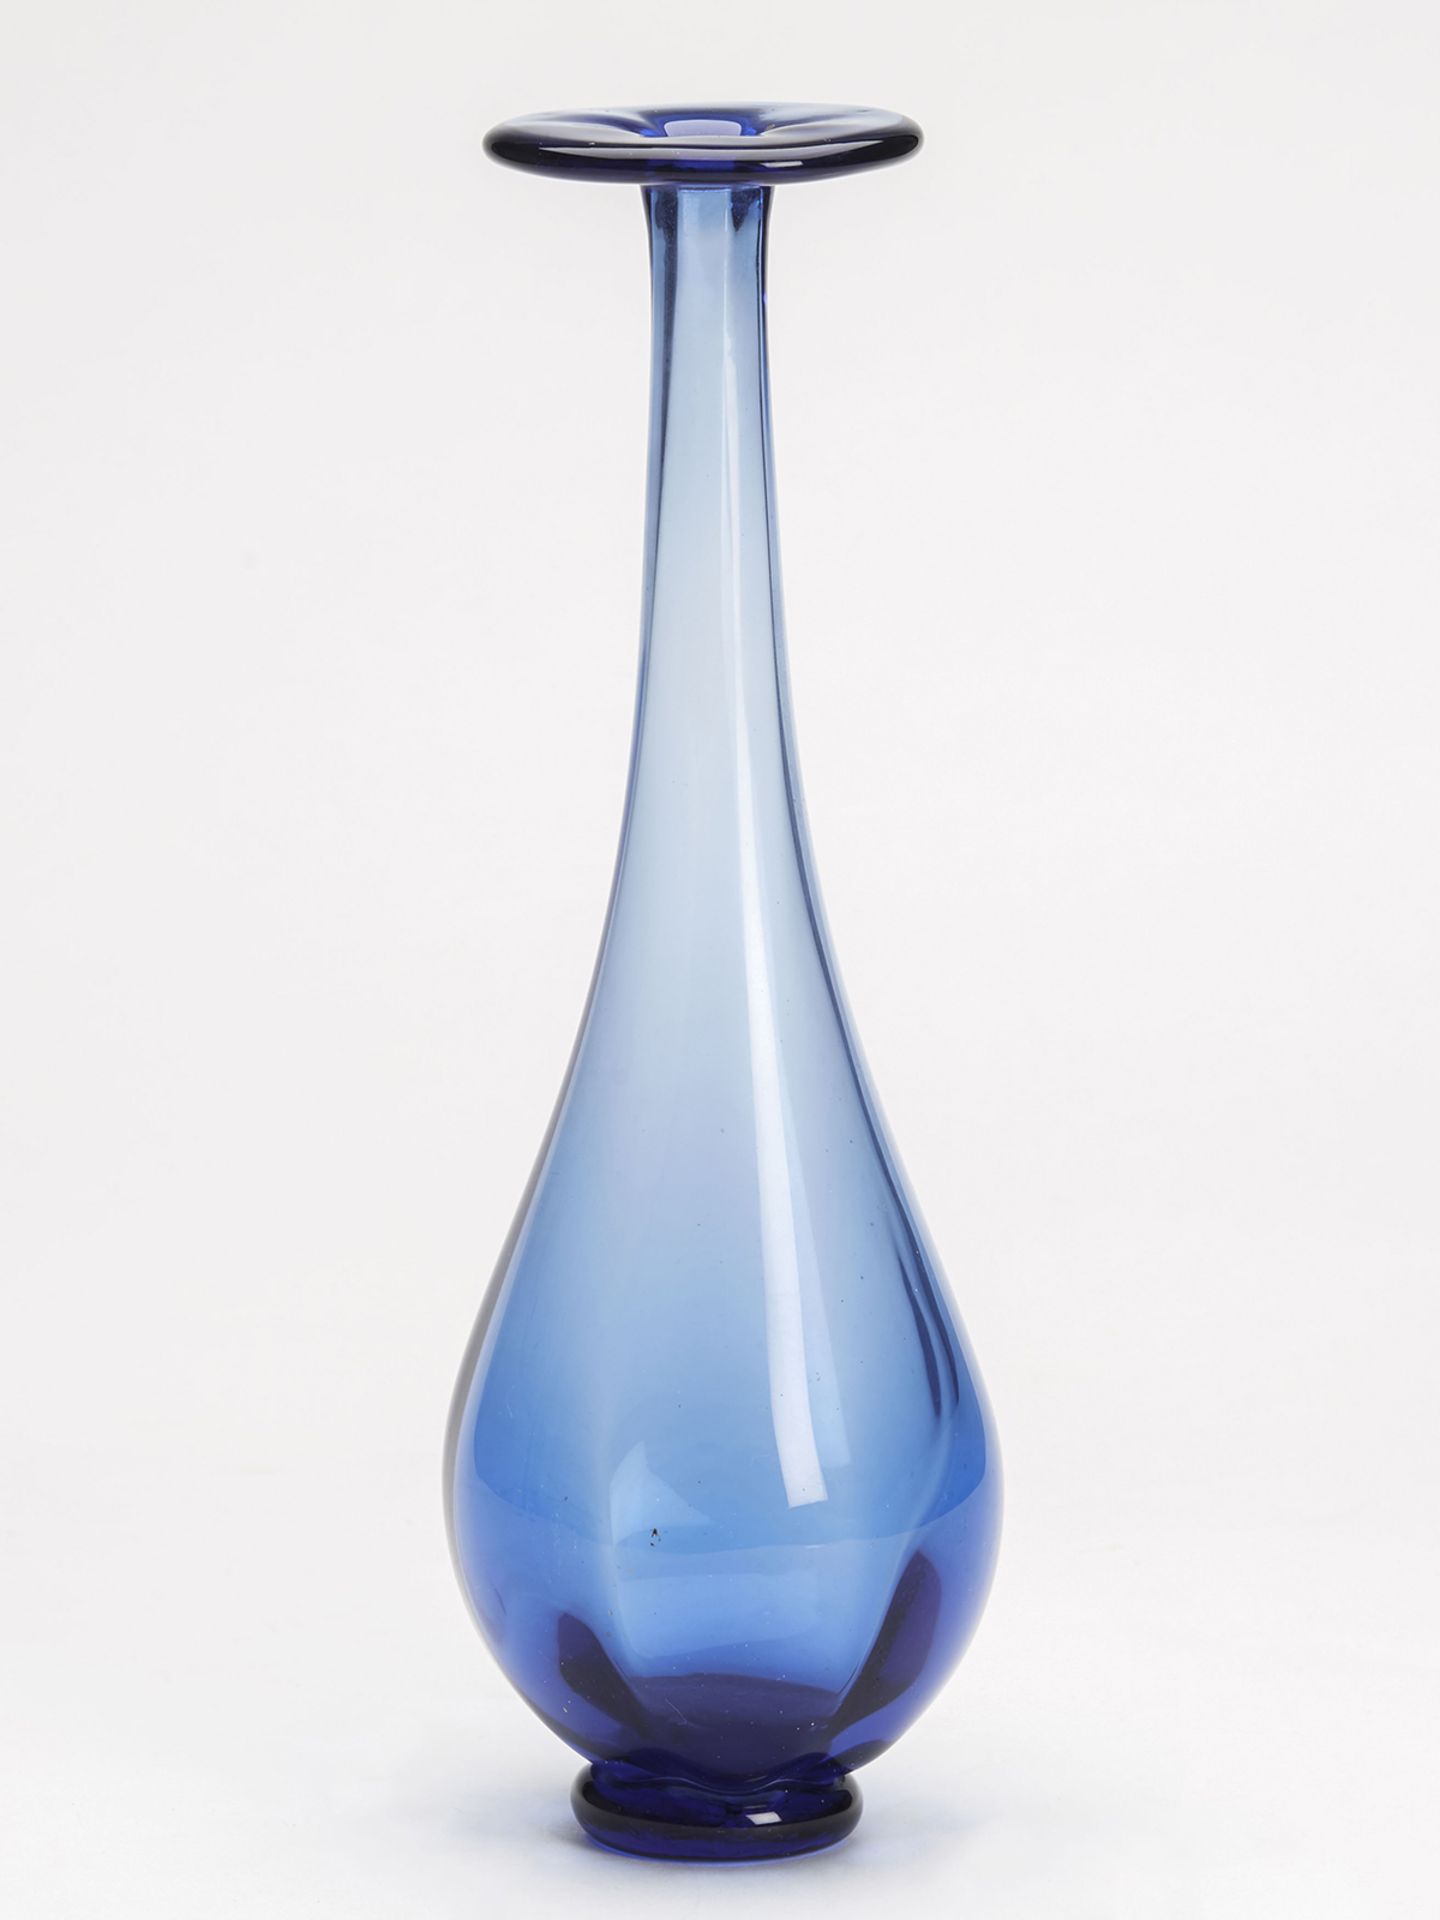 Vintage Signed Scandinavian? Blue Art Glass Vase 20Th C. - Image 2 of 5